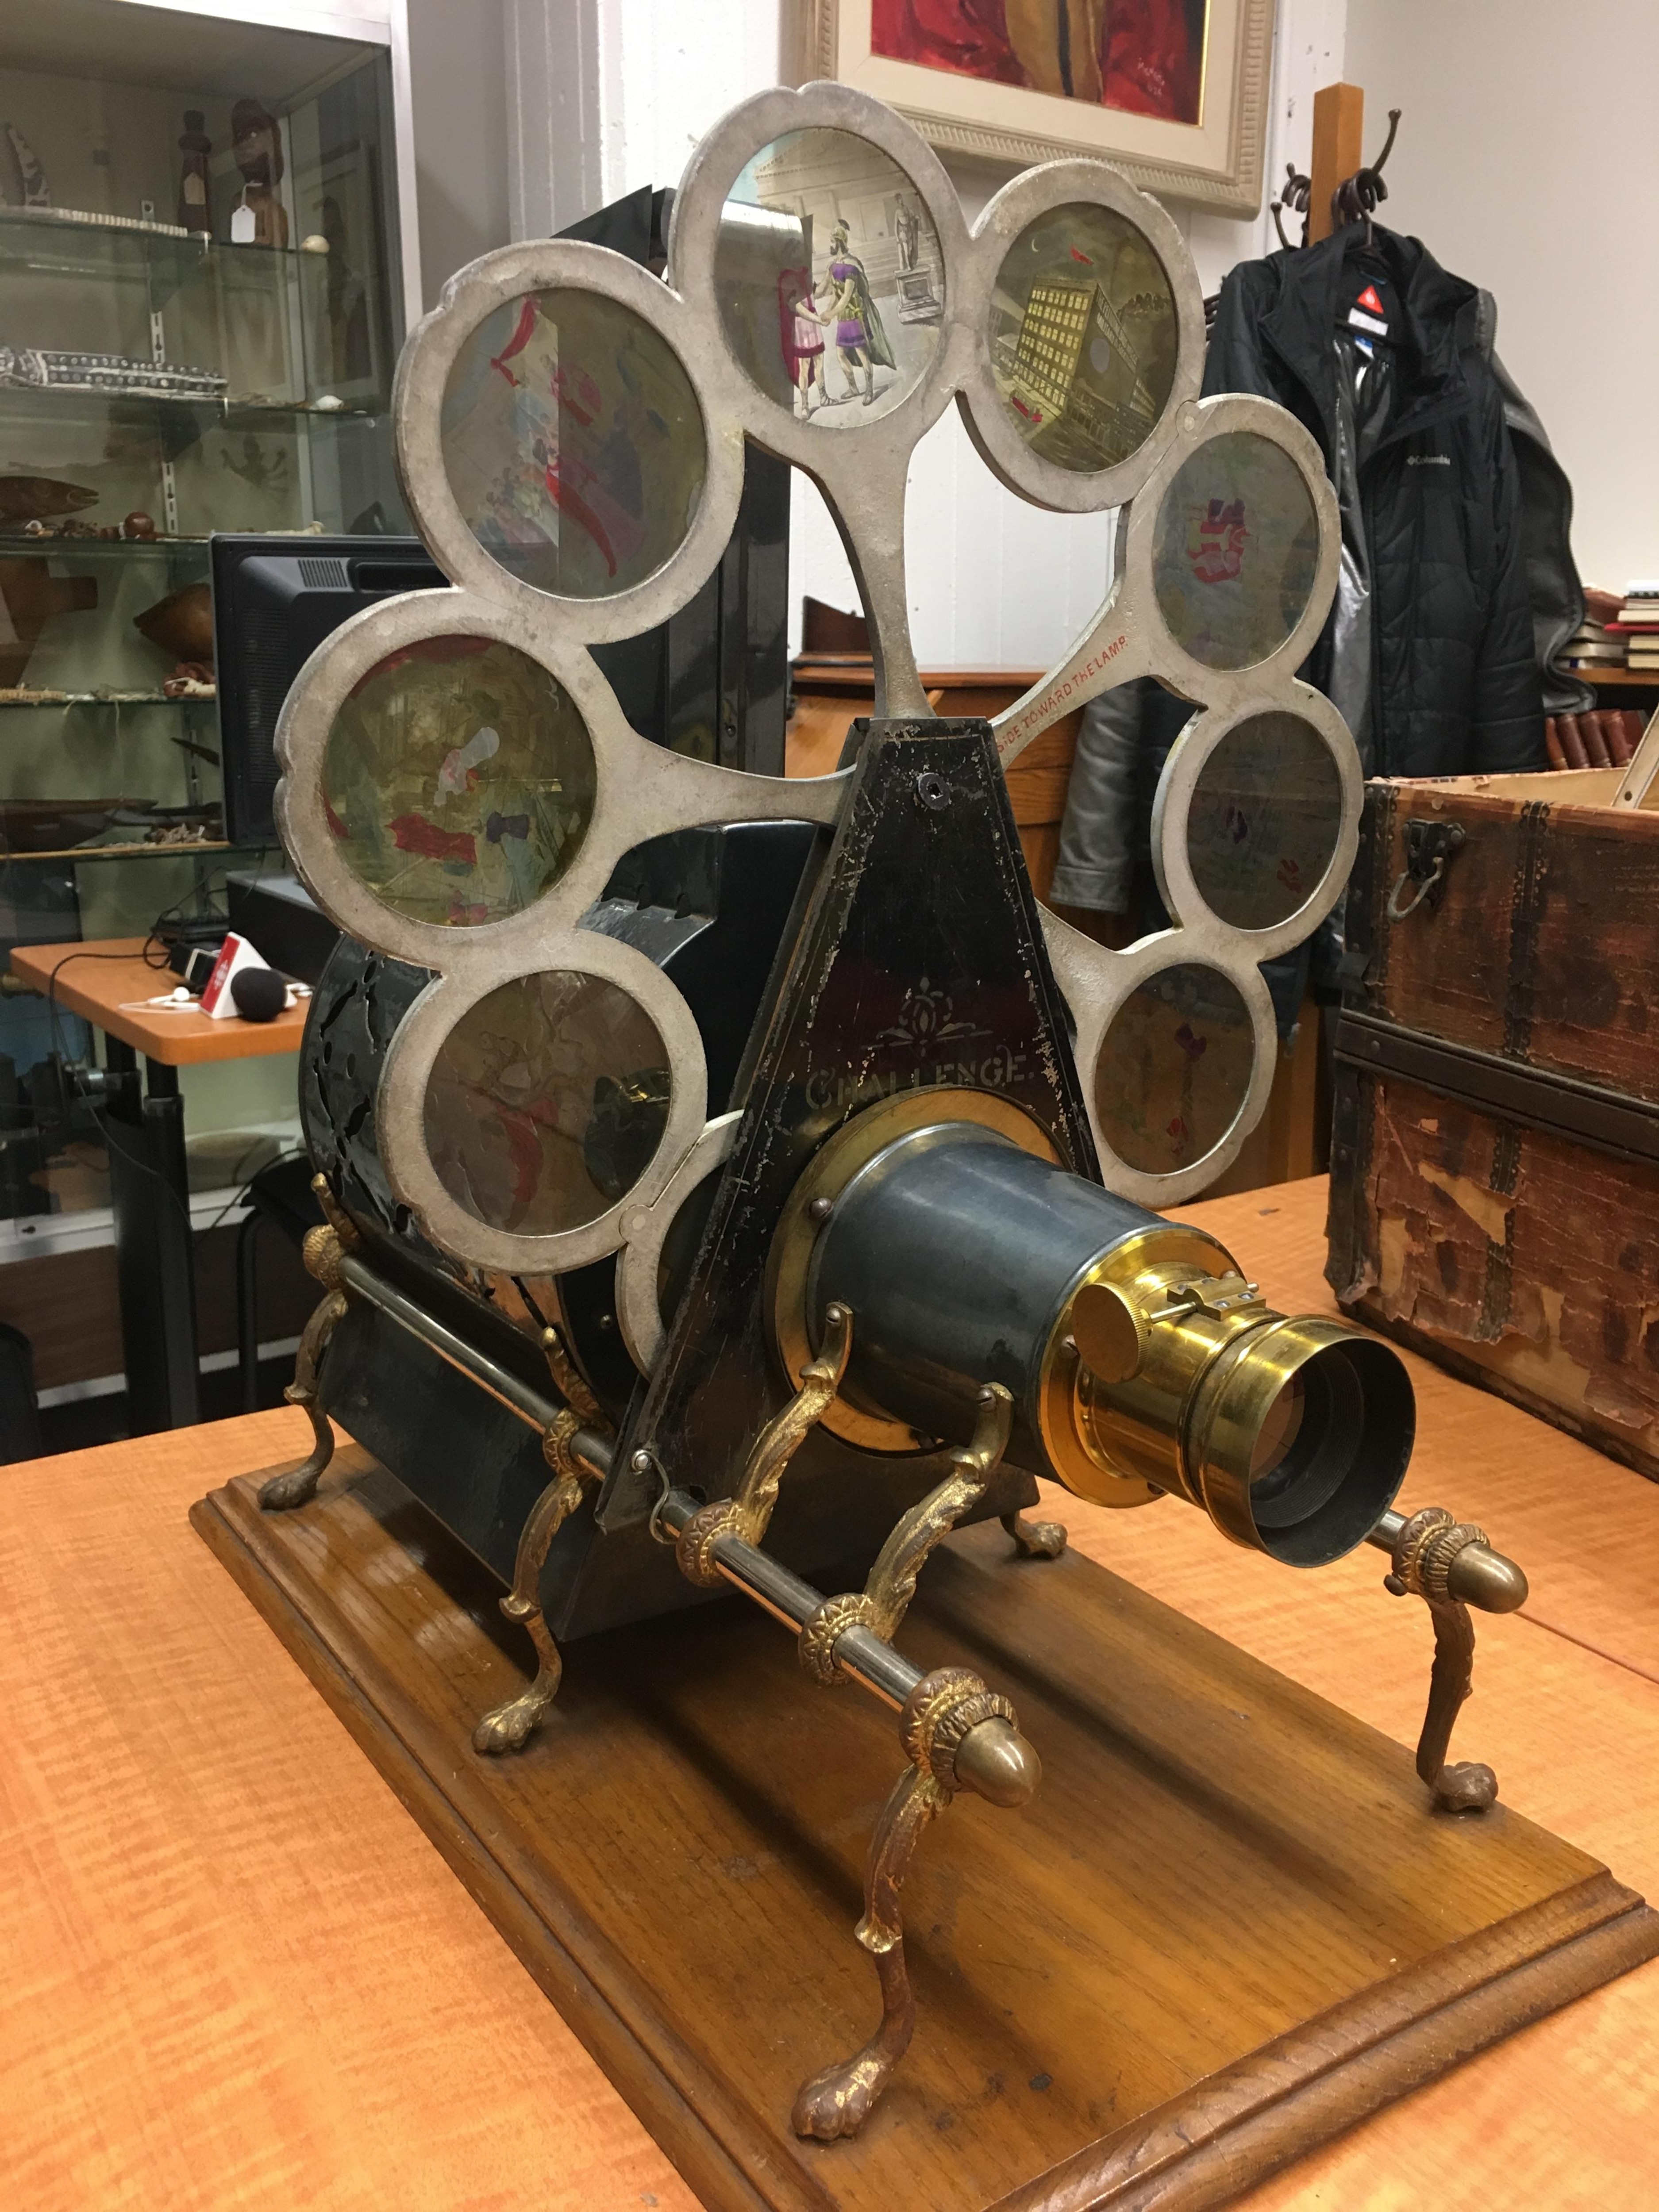 Une lanterne magique, ancêtre des appareils cinématographiques, qui fait partie du don du collectionneur François Lemai à l'Université Laval, 